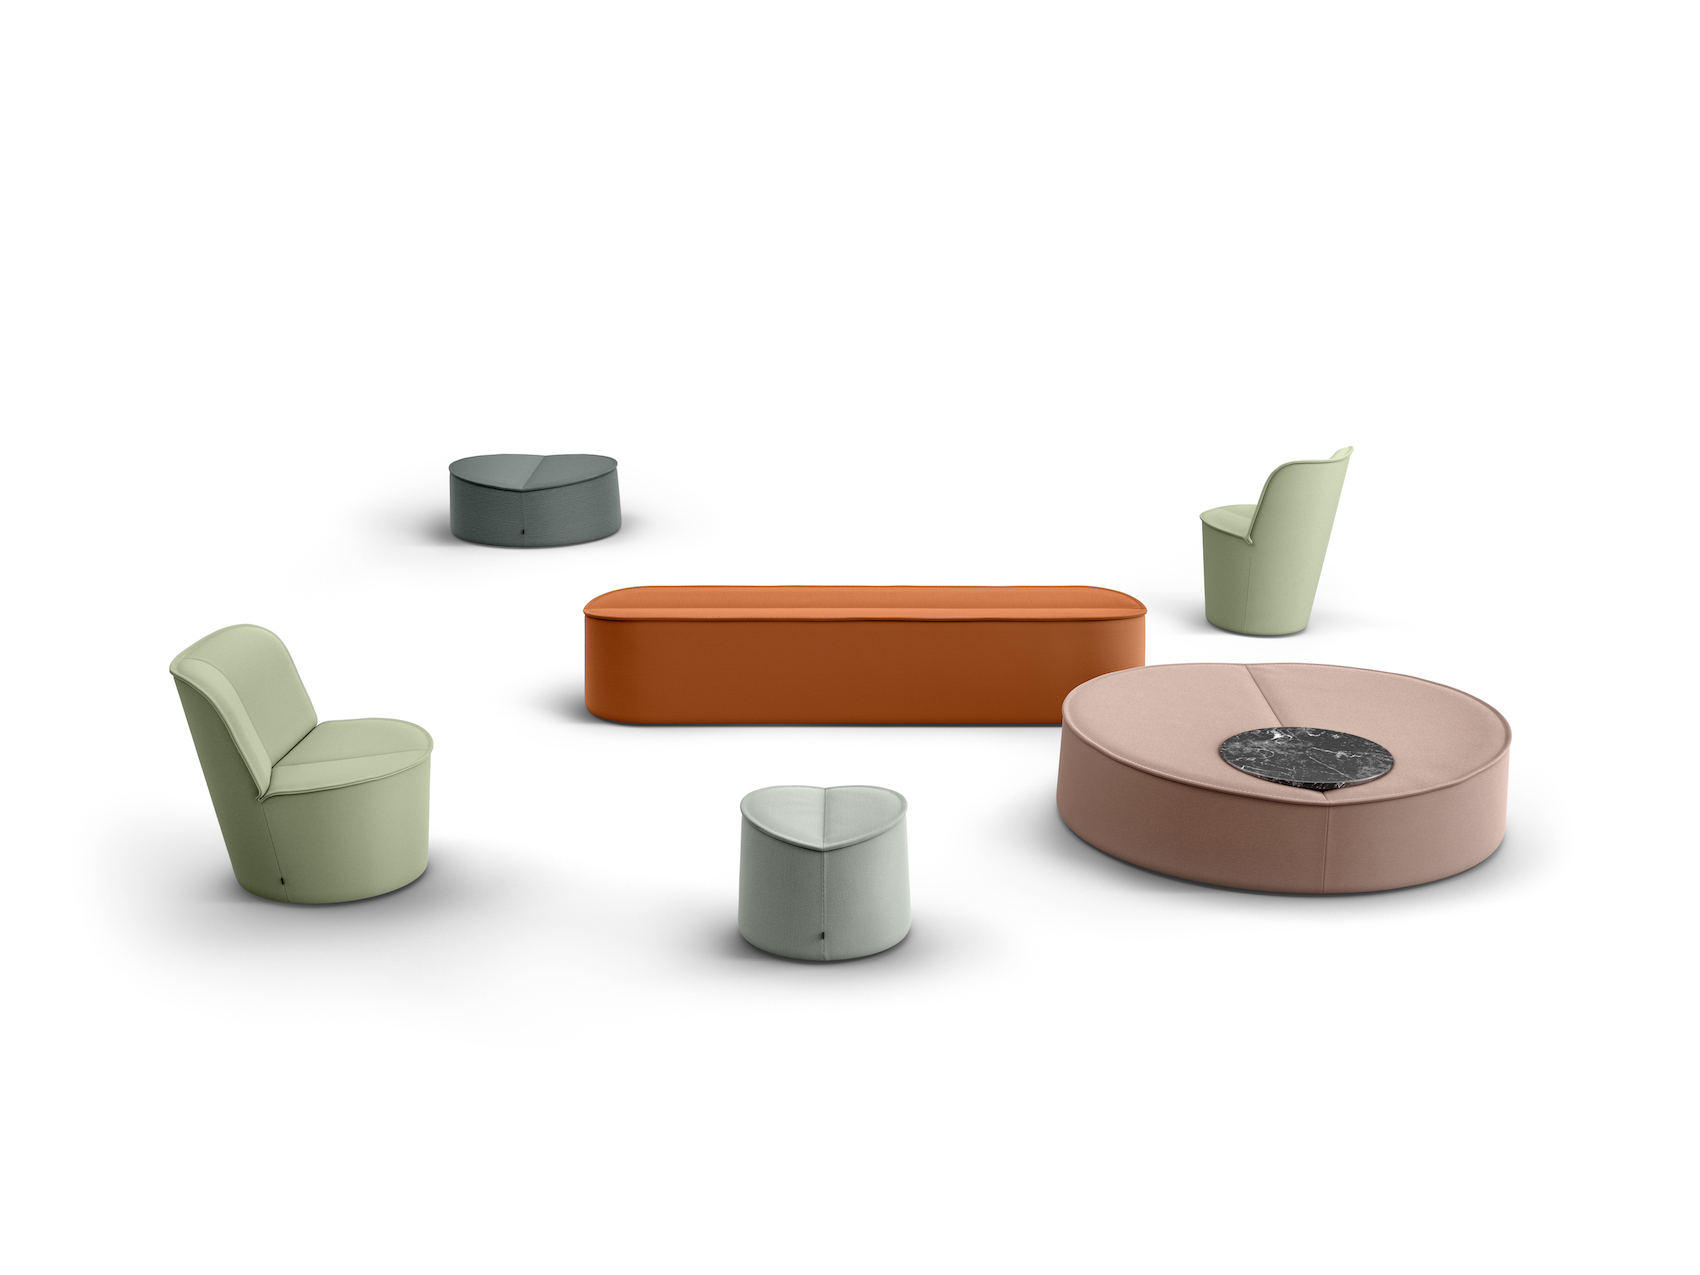 Architectural Furniture Concept "Nenou" by Jörg Boner